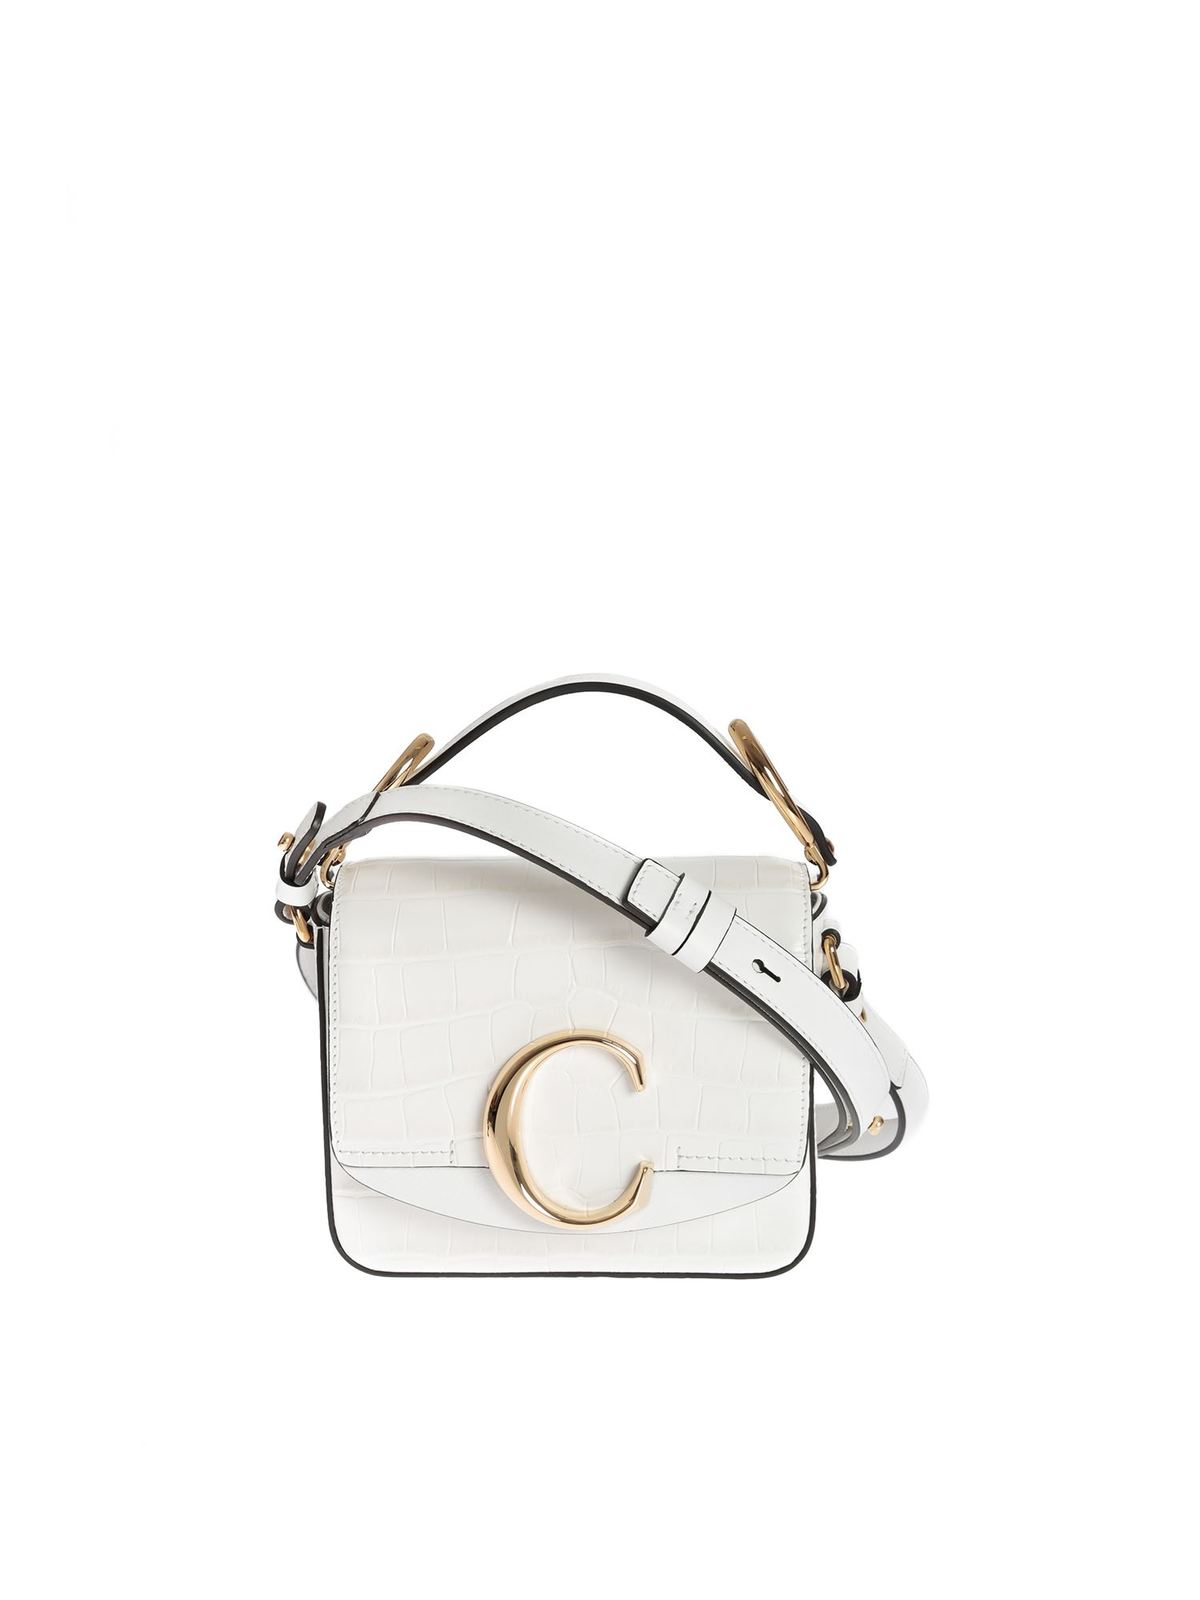 Chloe, Bags, Brand New Chloe C Chain Clutch Bag